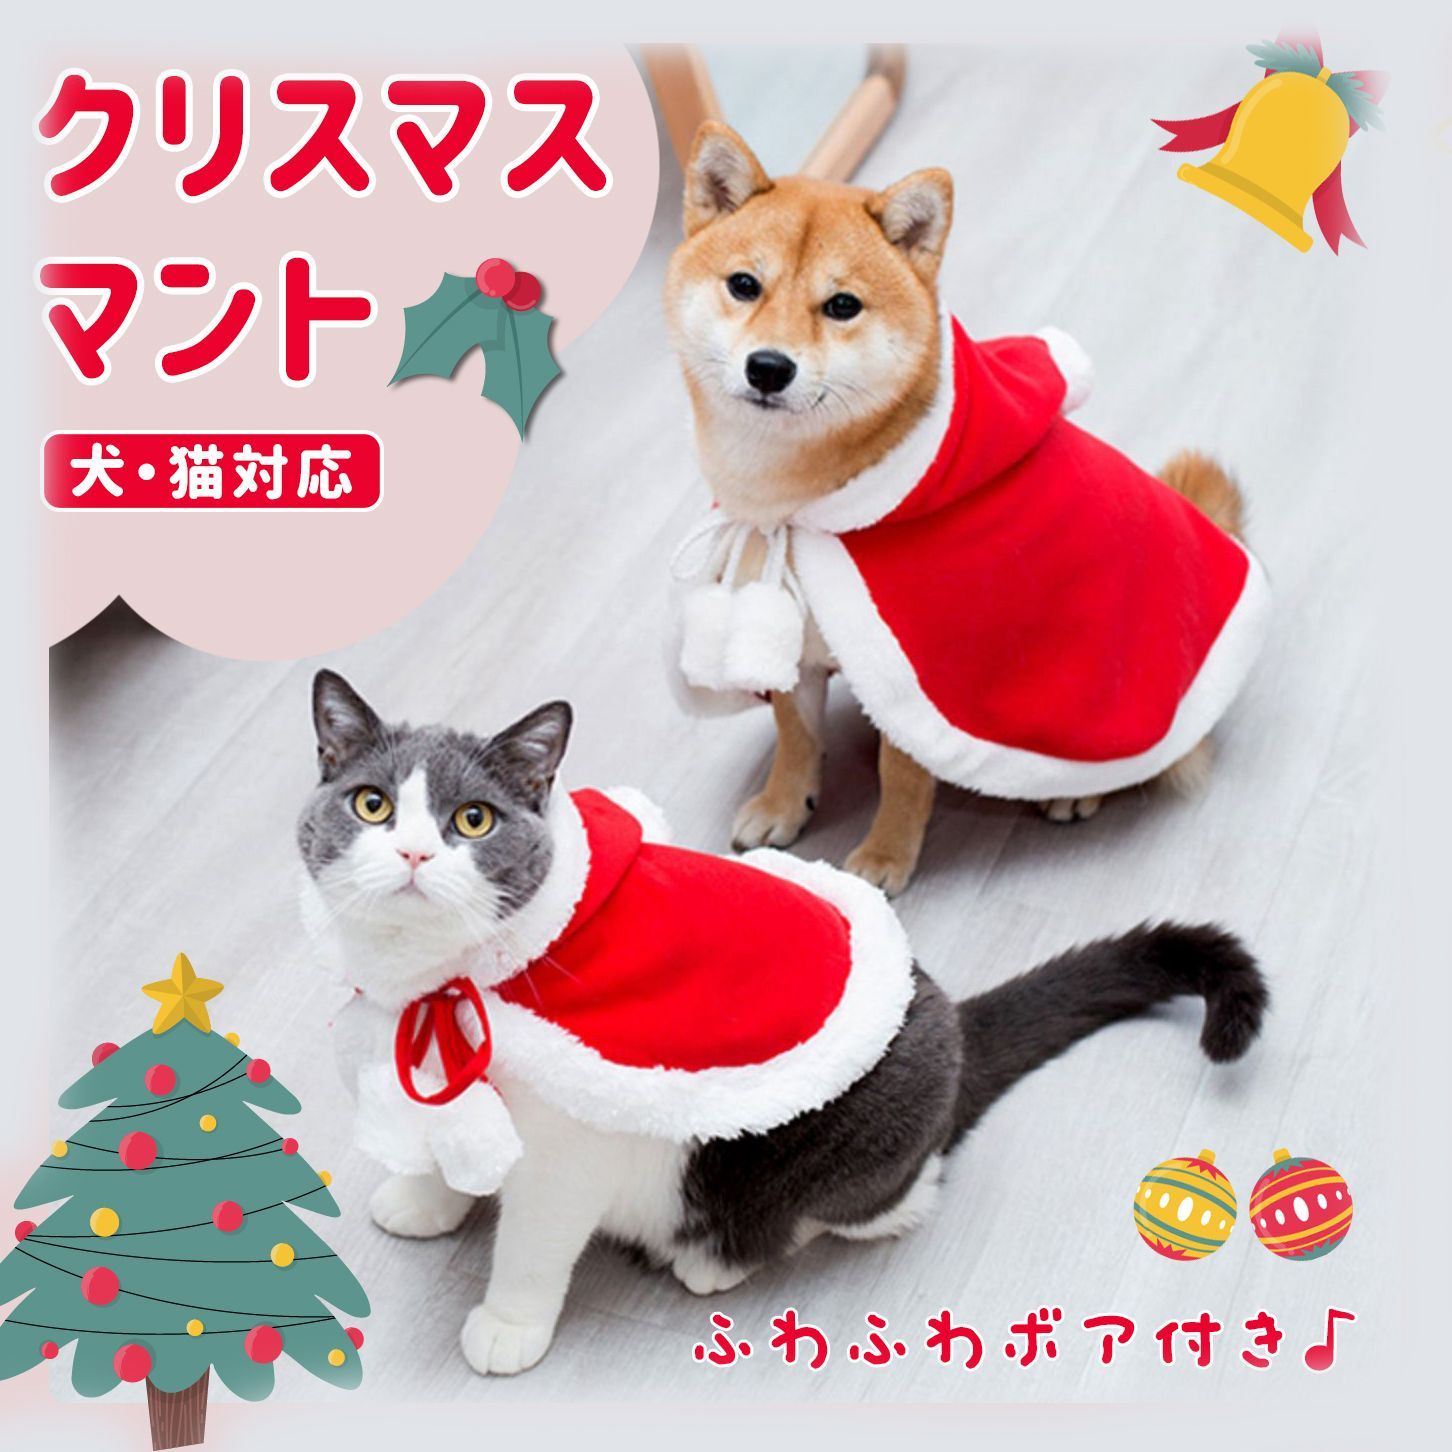 petsd01】ペット クリスマスマント 猫 犬 クリスマス ケープ 飾り付け